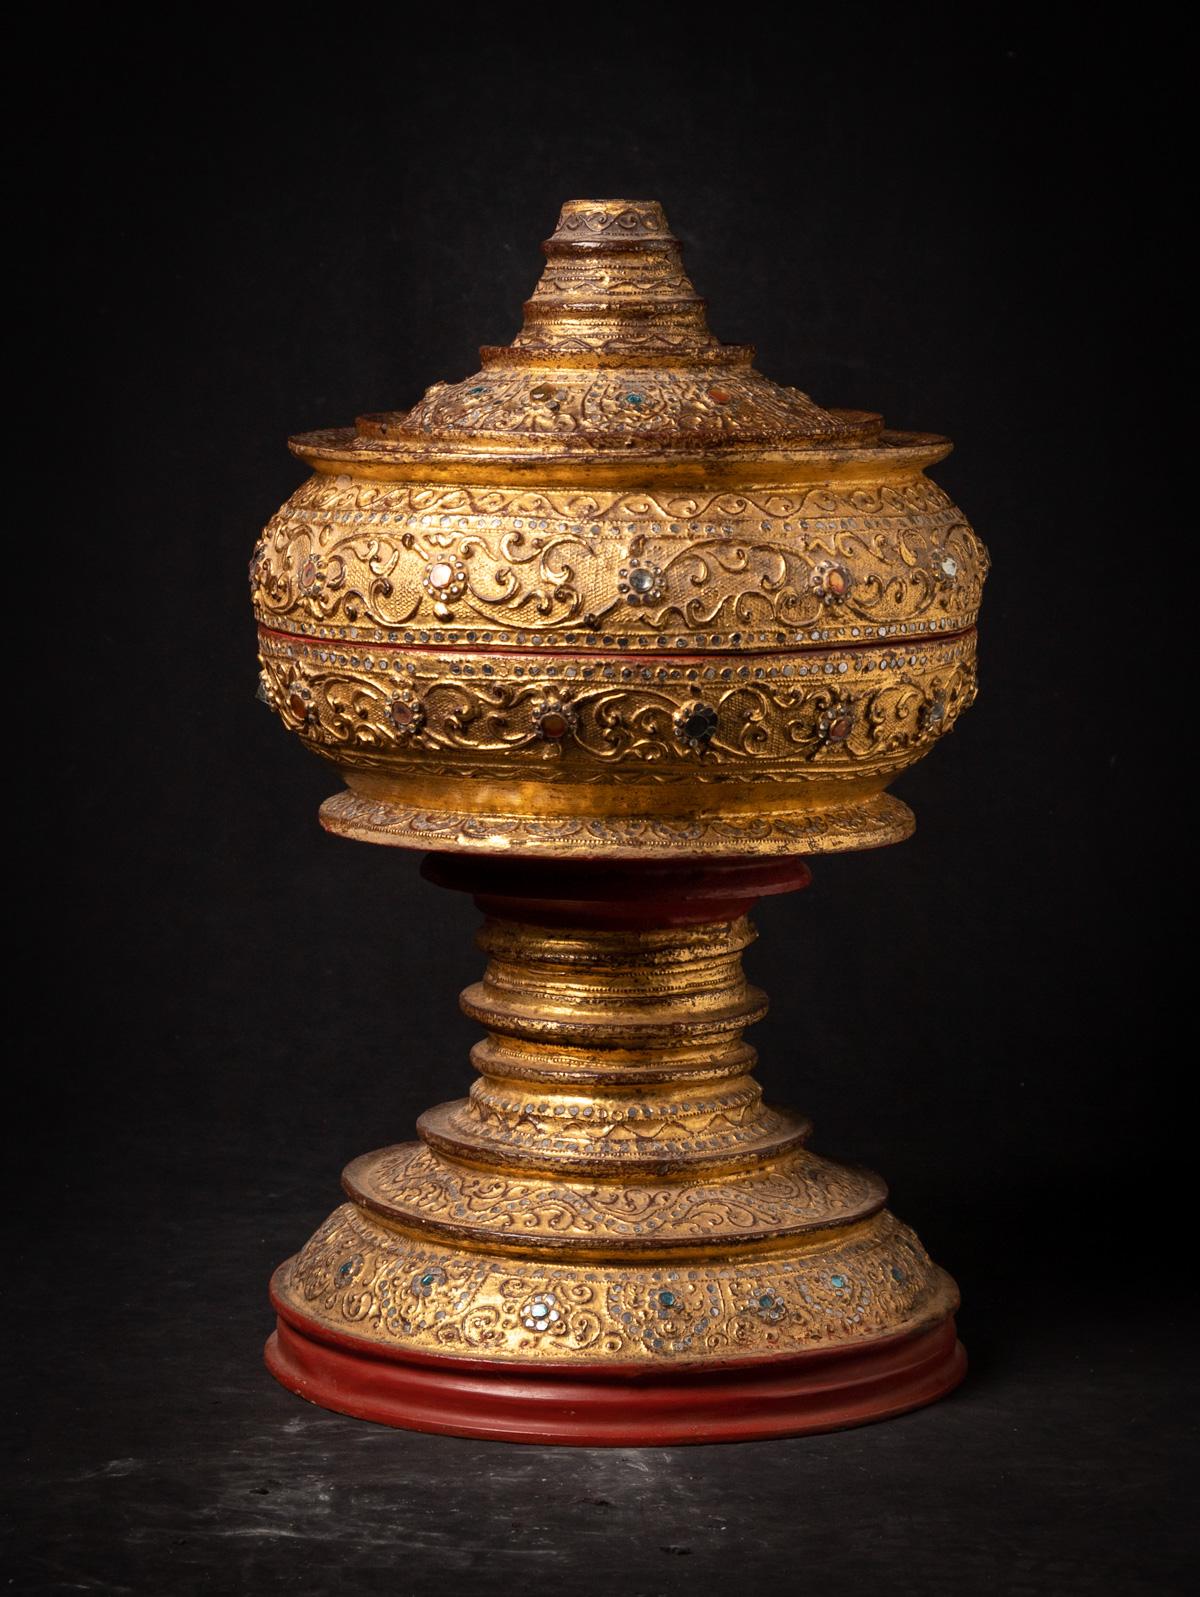 MATERIAL : Lackwaren
79 cm hoch
35 cm Durchmesser
Vergoldet mit 24 krt. Gold
Mandalay-Stil
19. Jahrhundert
Mit original Hintha-Vogel obenauf
Gewicht: 3,55 kg
Mit Ursprung in Birma
Nr: 3664-37